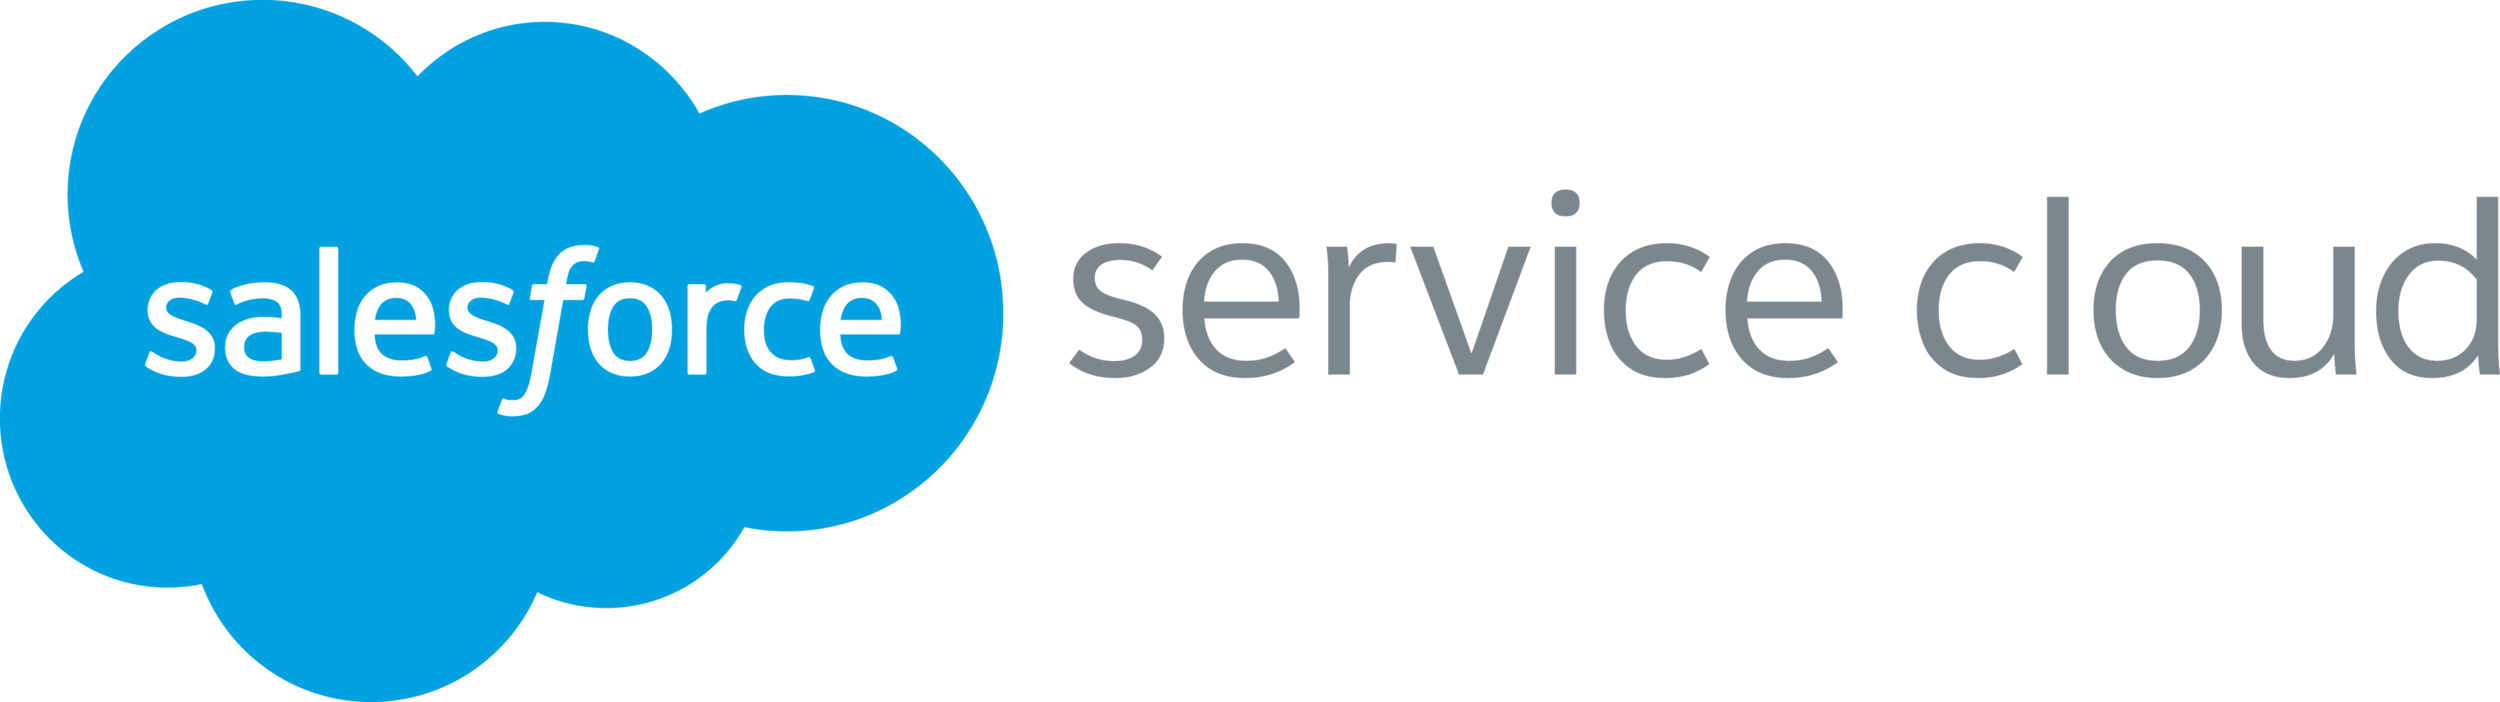 service-cloud.png